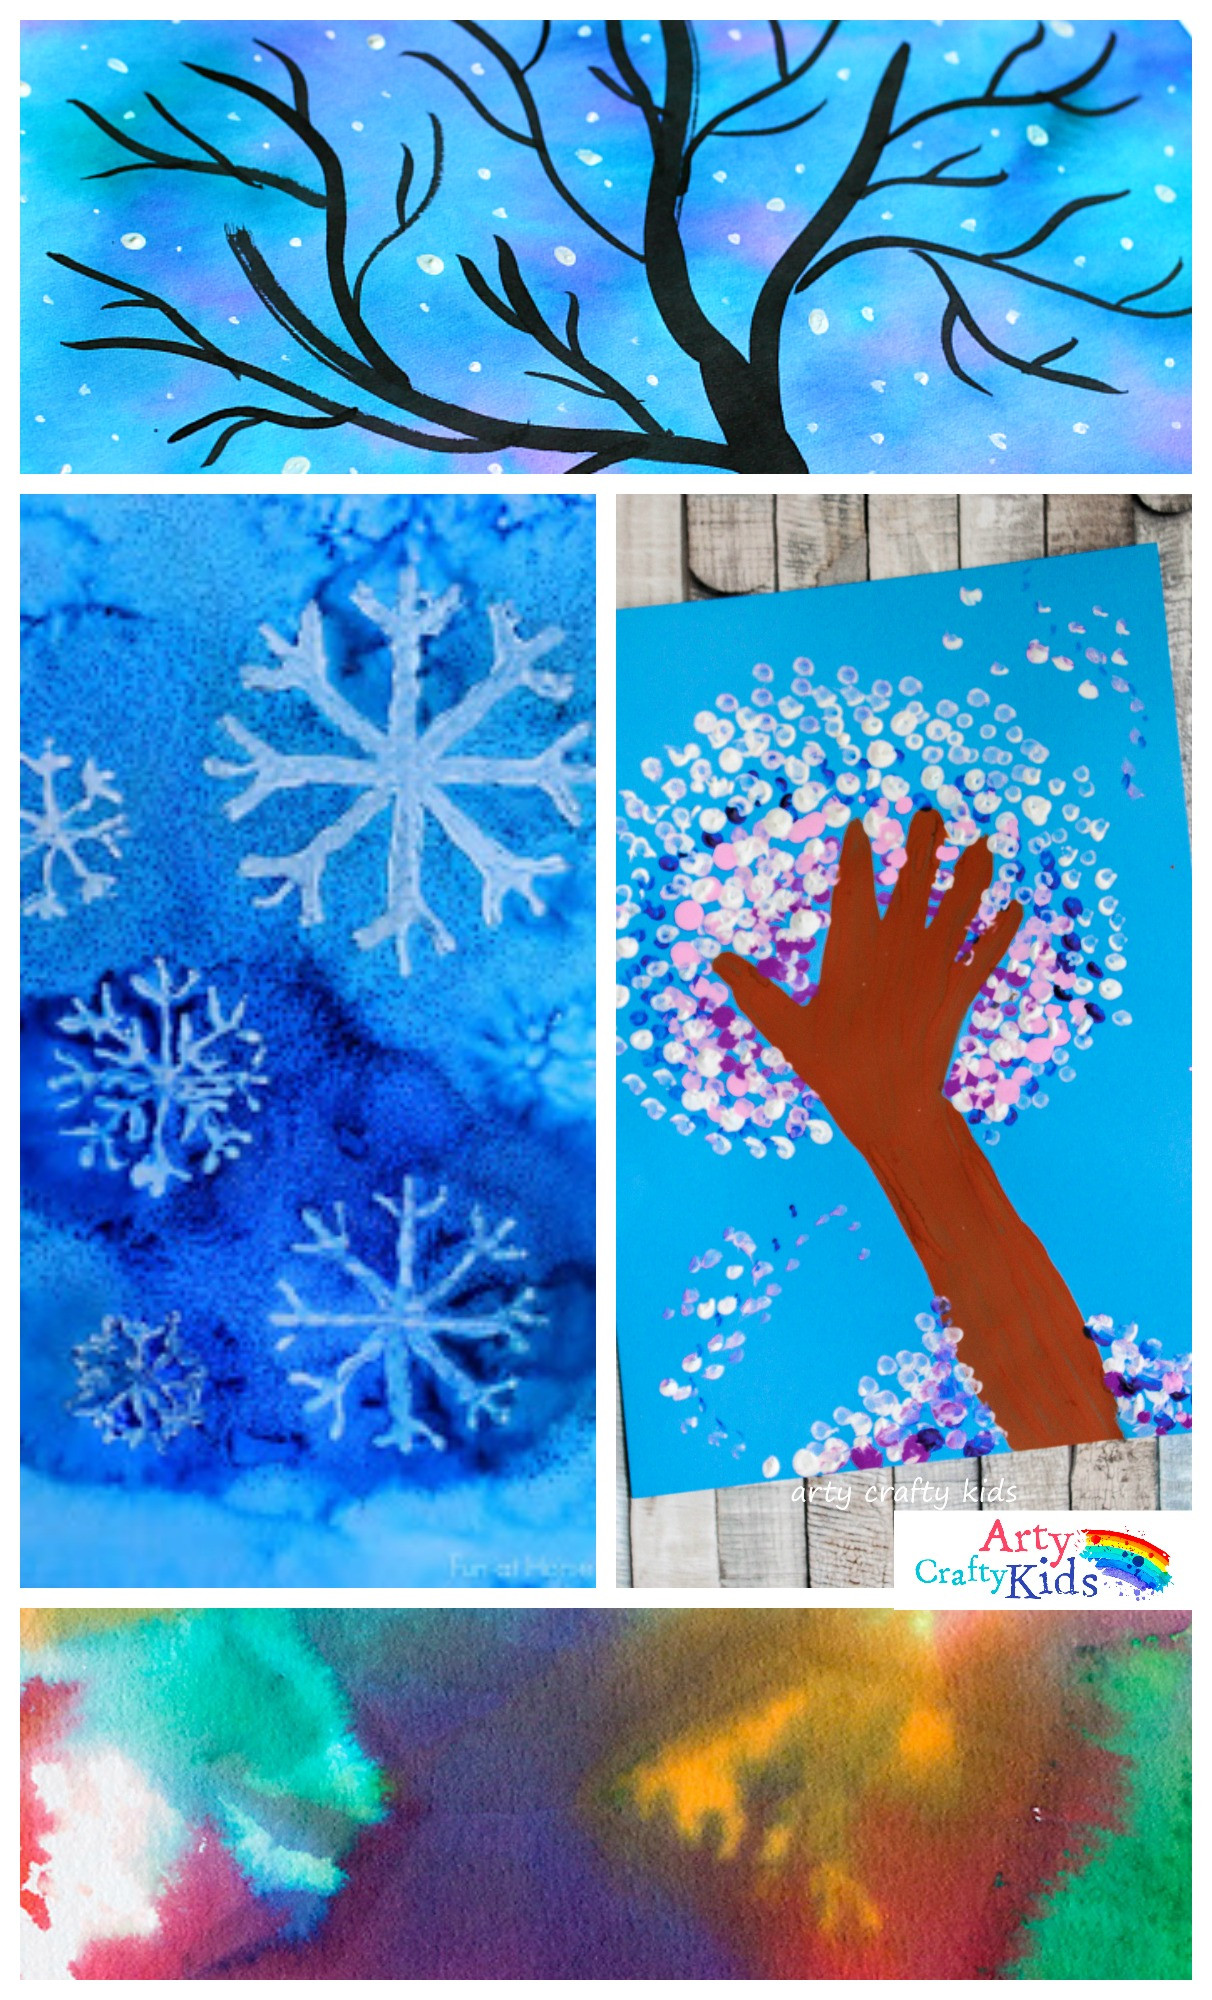 Fun Art Projects For Kids
 14 Wonderful Winter Art Projects for Kids Arty Crafty Kids